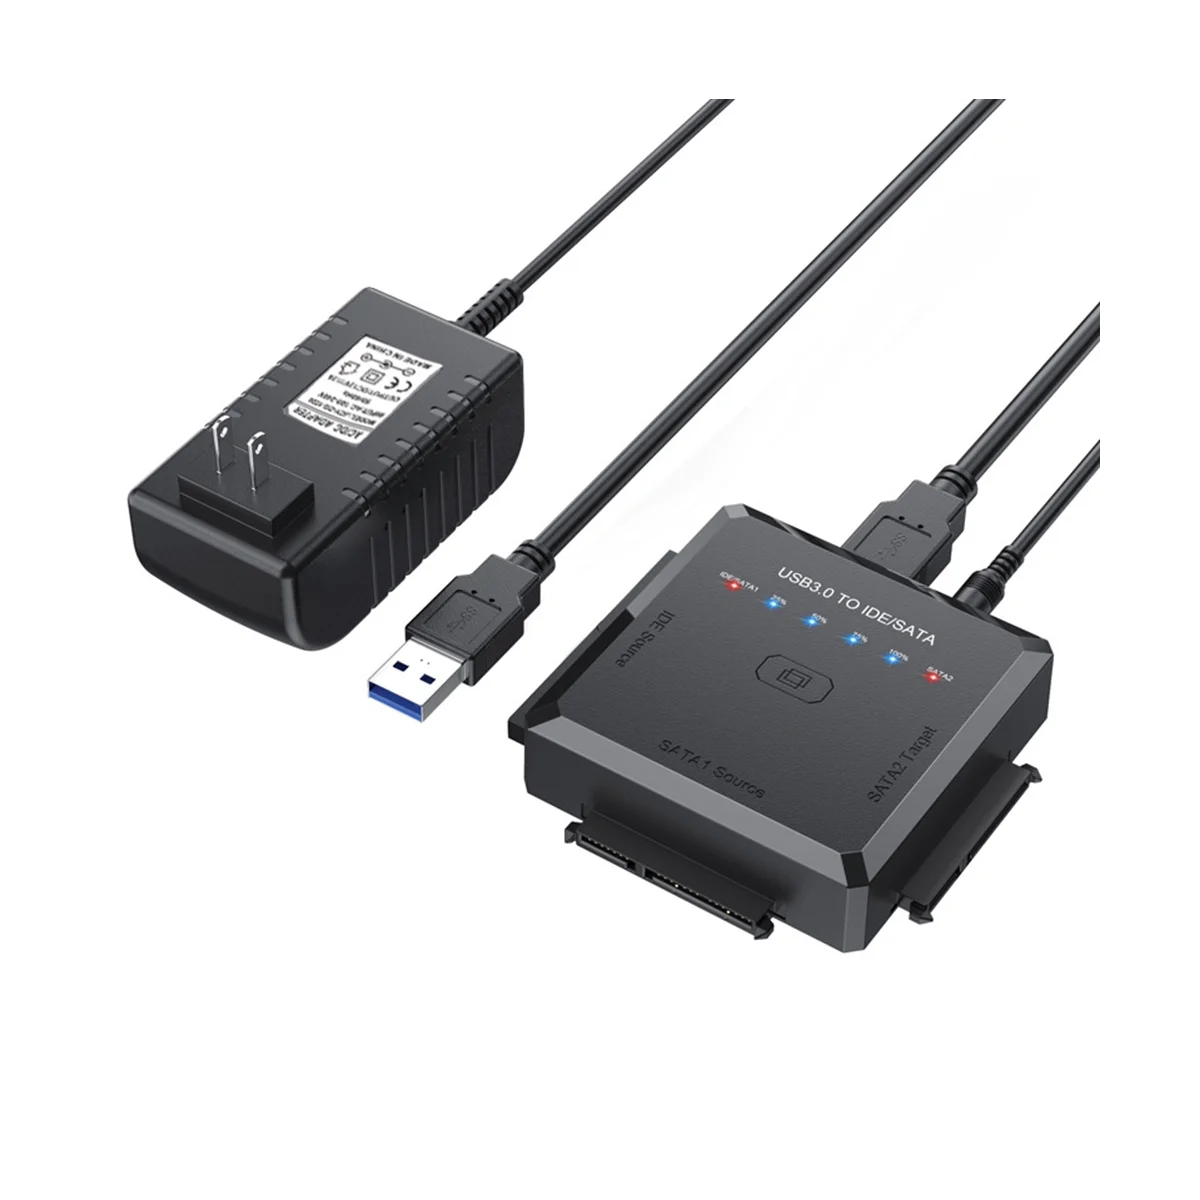 

Адаптер USB 3,0 для SATA IDE, подходит для жестких дисков 2,5, 3,5 дюйма, внешний кабель-адаптер для HDD/SSD, скорость 5 Гбит/с, европейская вилка